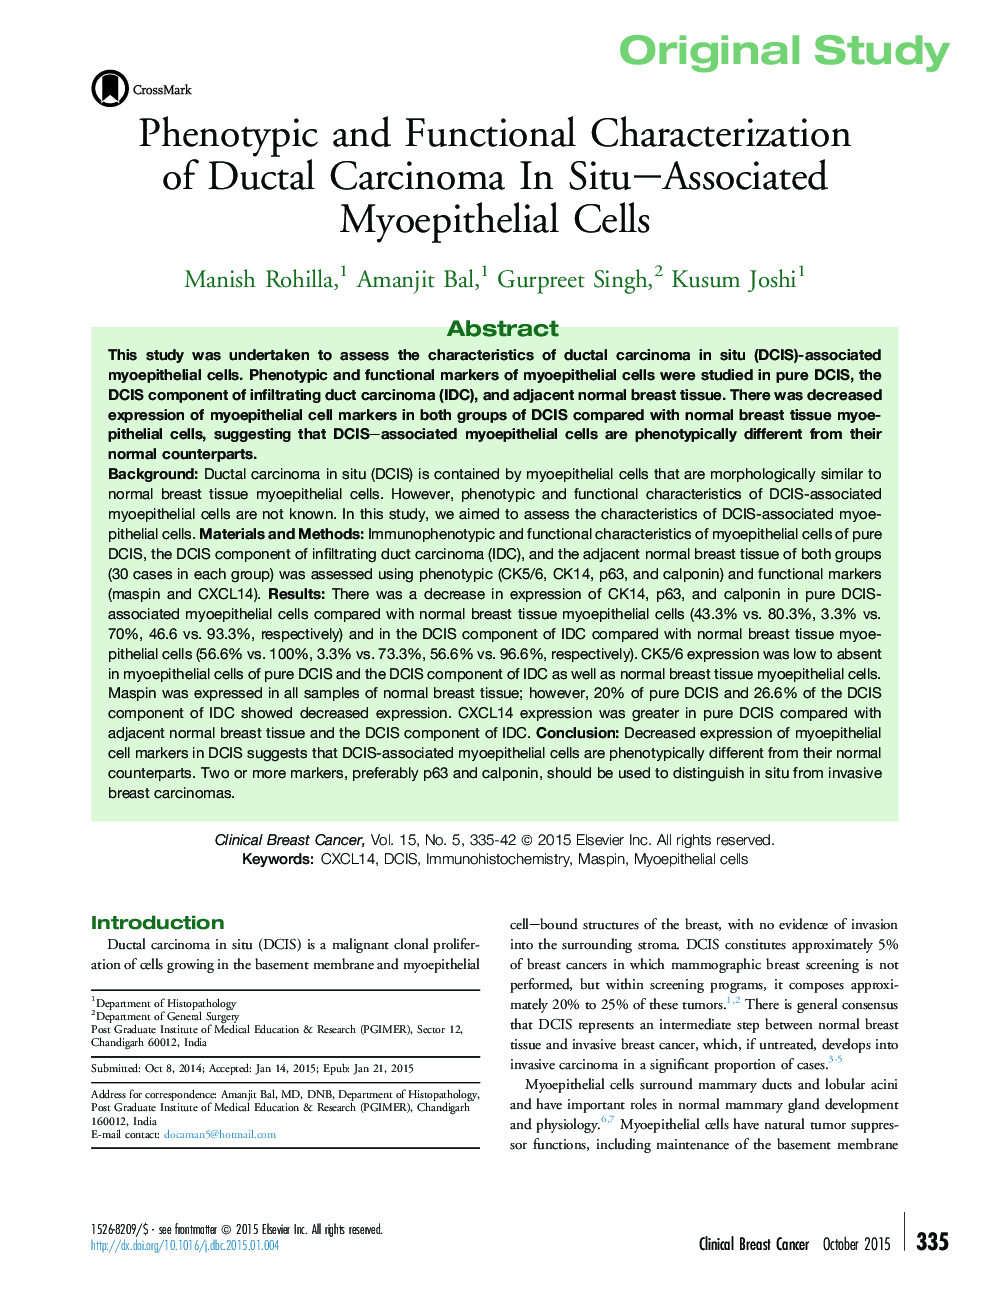 خصوصیات فنوتیپی و کارکردی کارسینوم دکتال در سلول های میوپی تلیال مرتبط با سیتا 